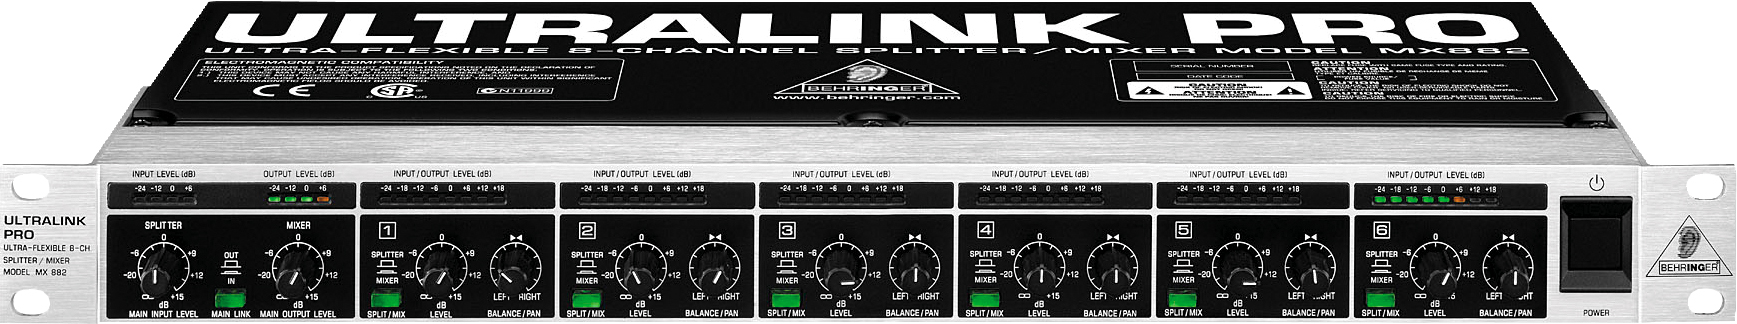 Behringer Behringer Ultralink Pro MX882 Splitter/Mixer, 8-Channel